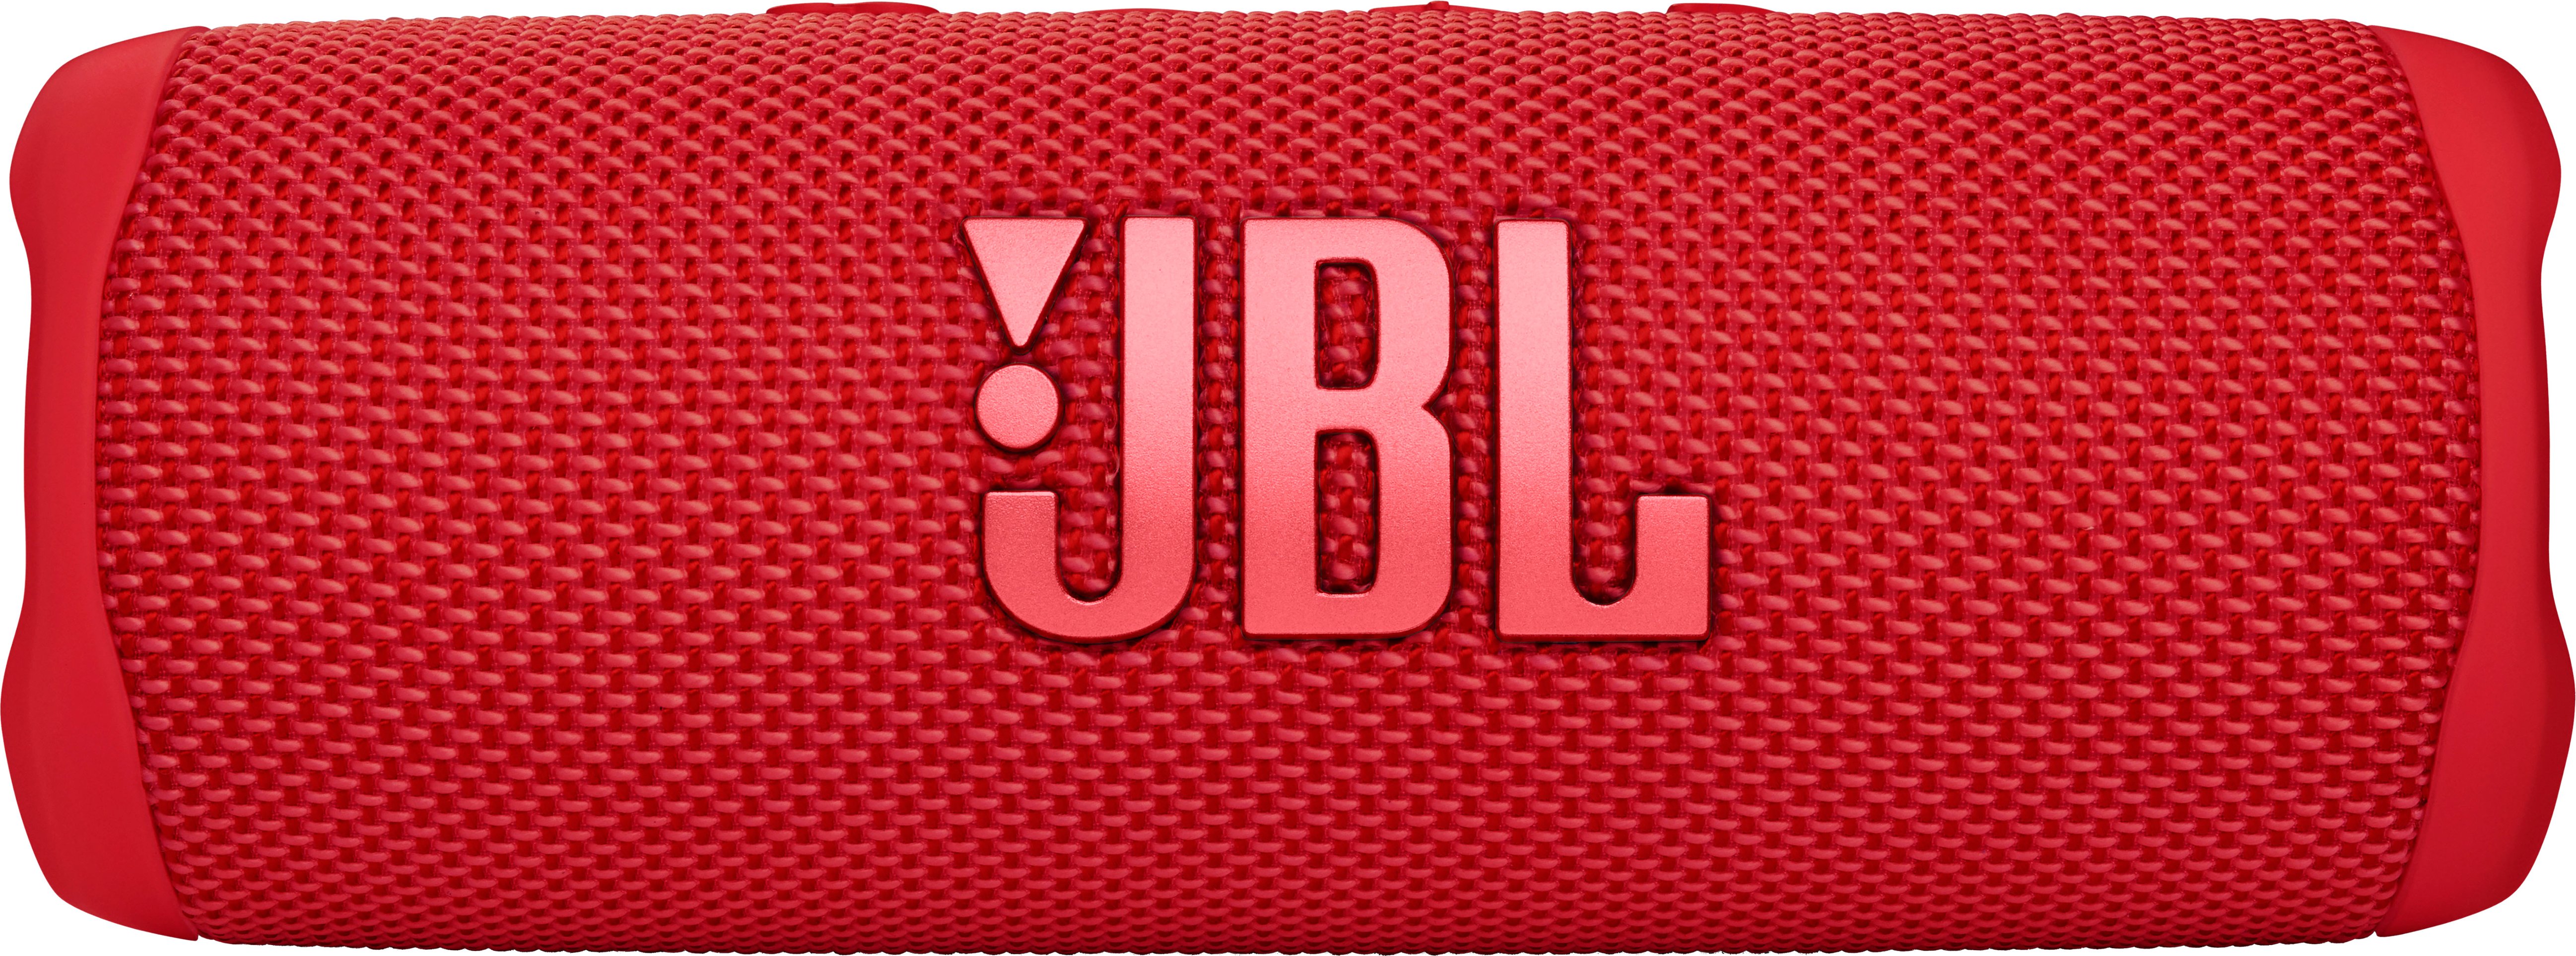 JBL FLIP6 Portable Waterproof Speaker Red JBLFLIP6REDAM 